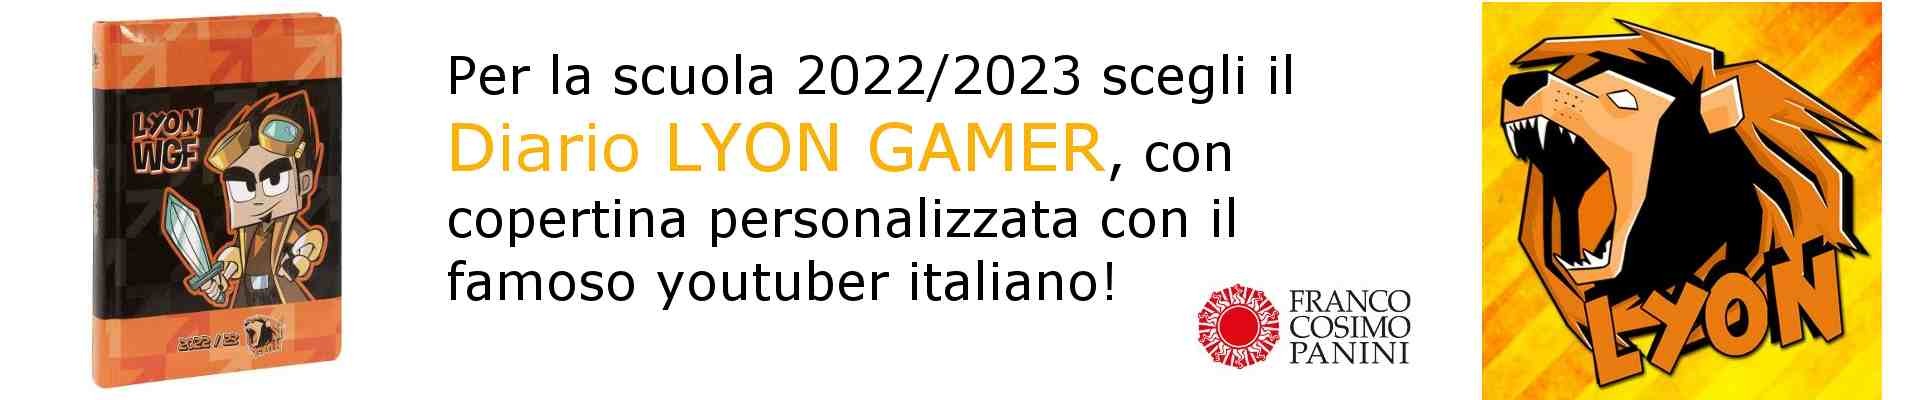 Diario Lyon gamer 2022-2023